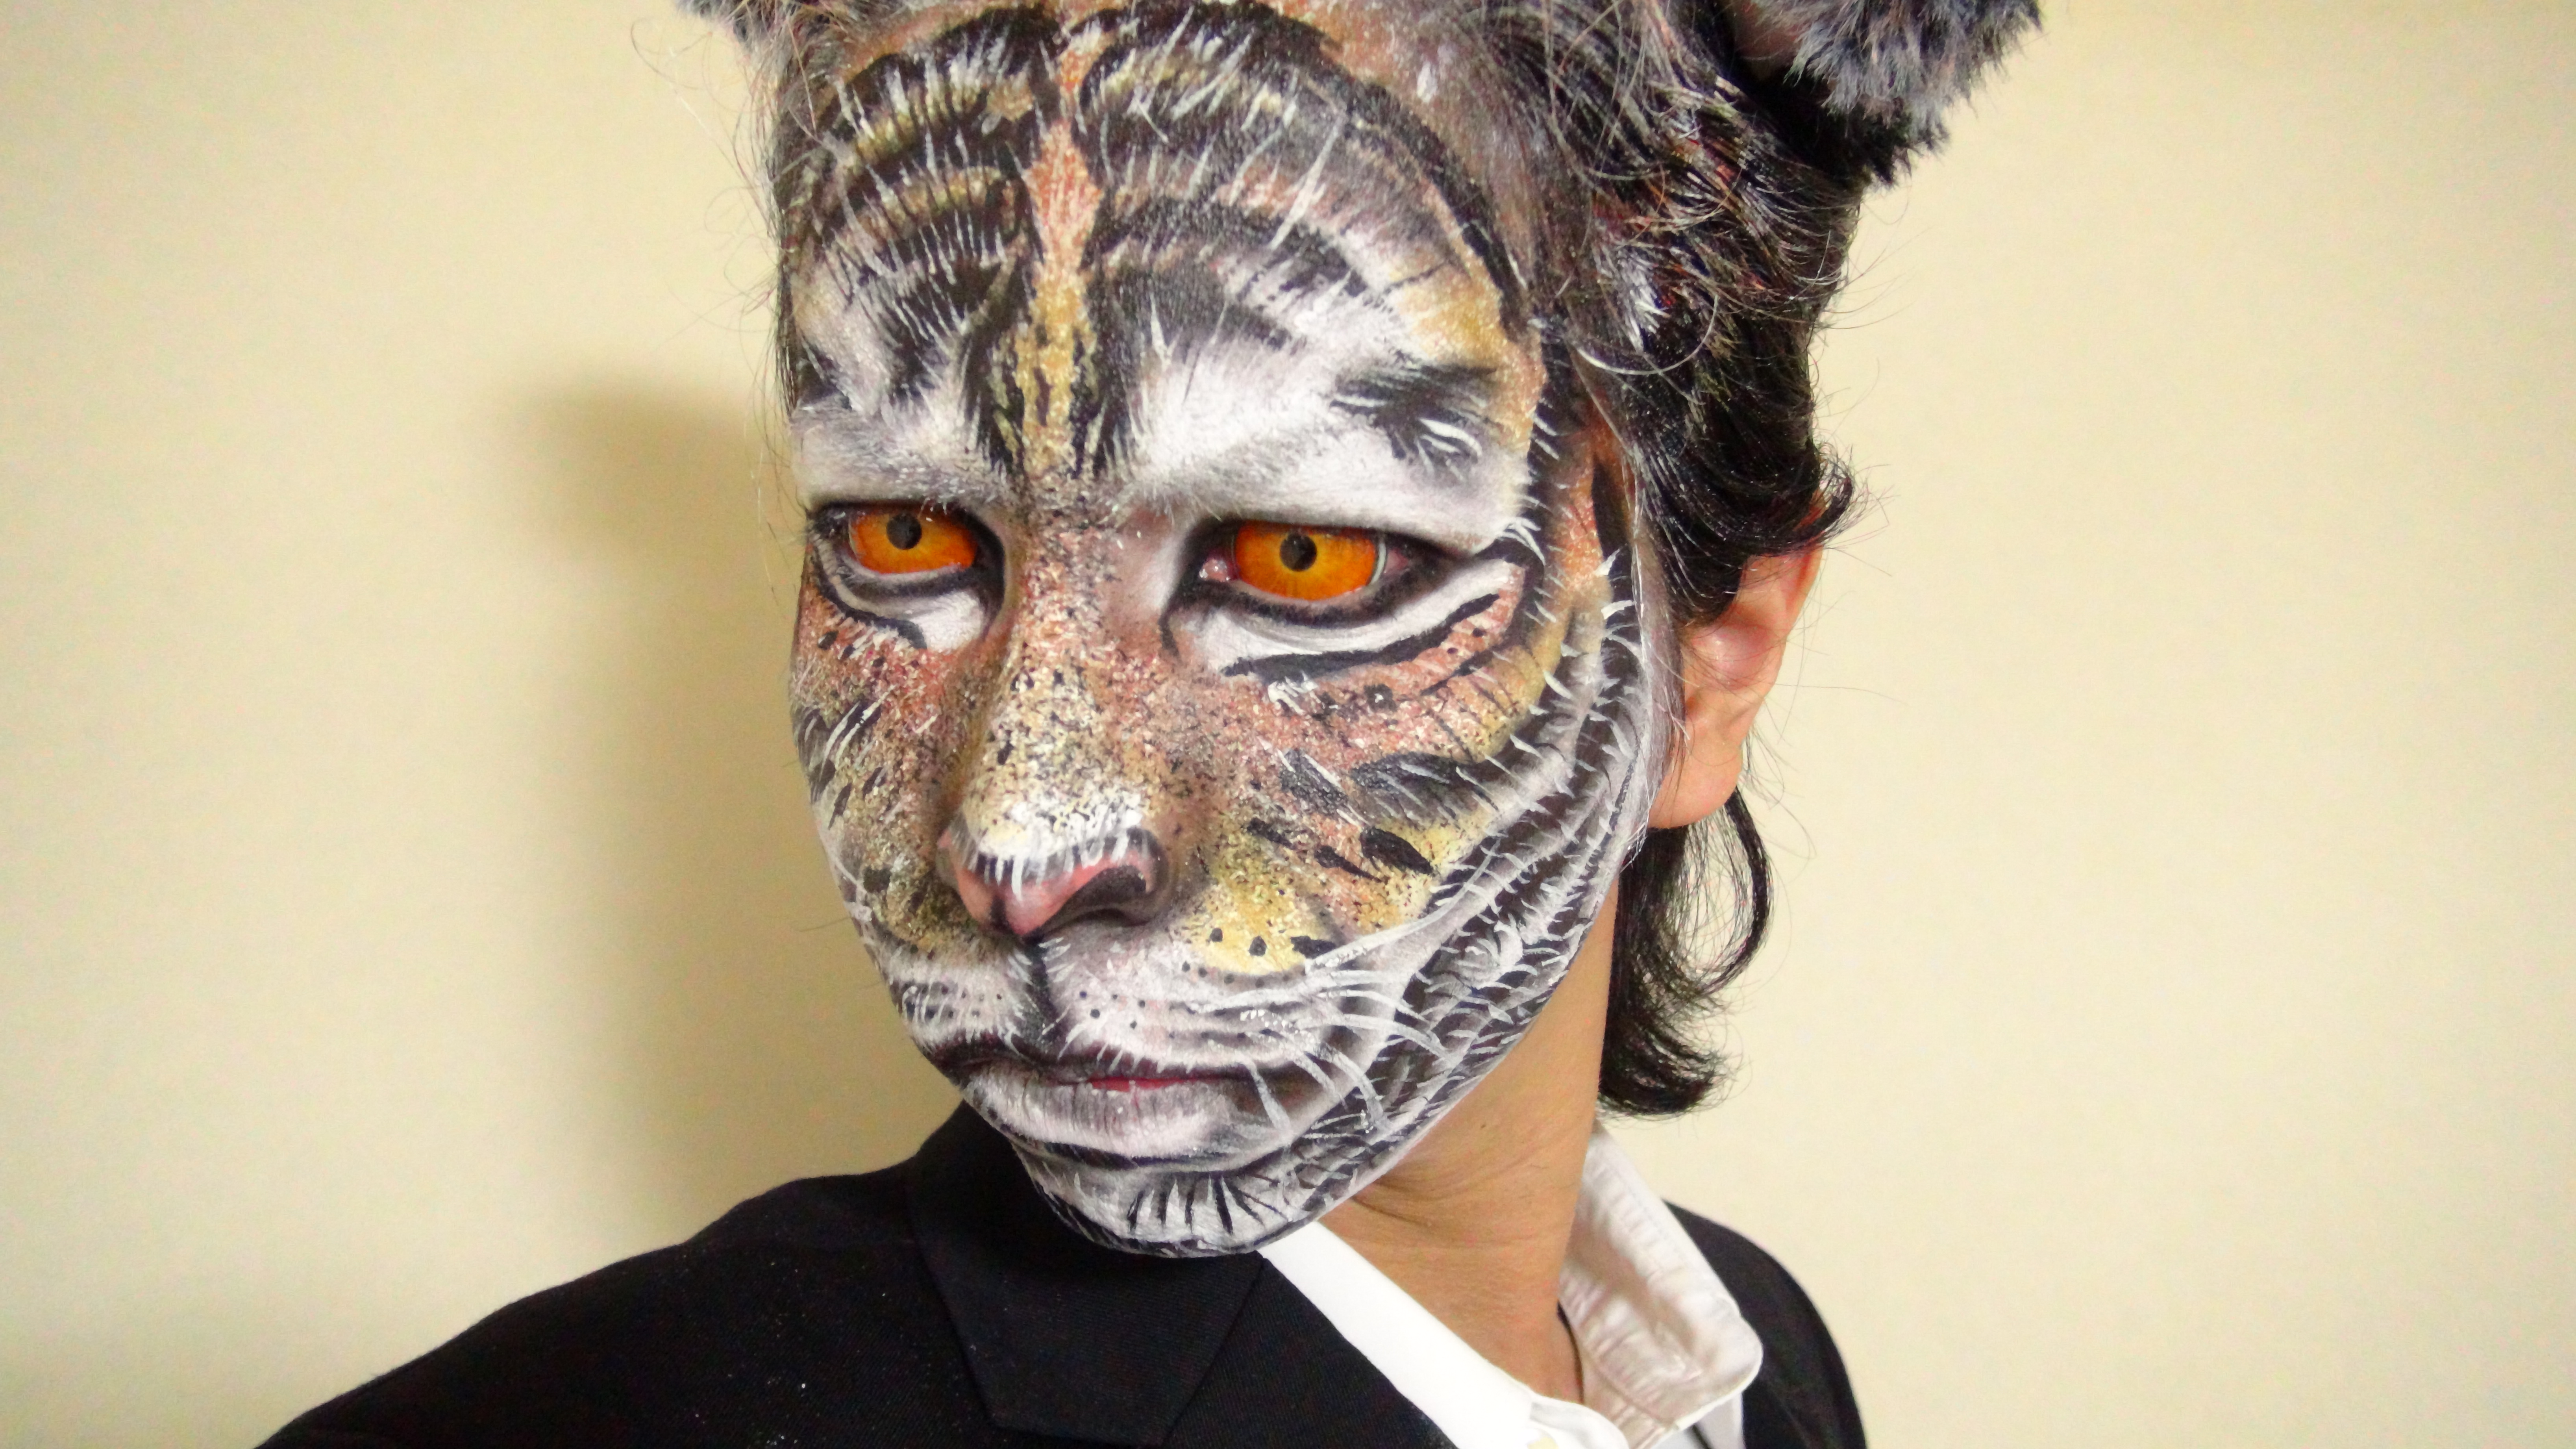 Tiger Makeup2 By Kisamake On Deviantart